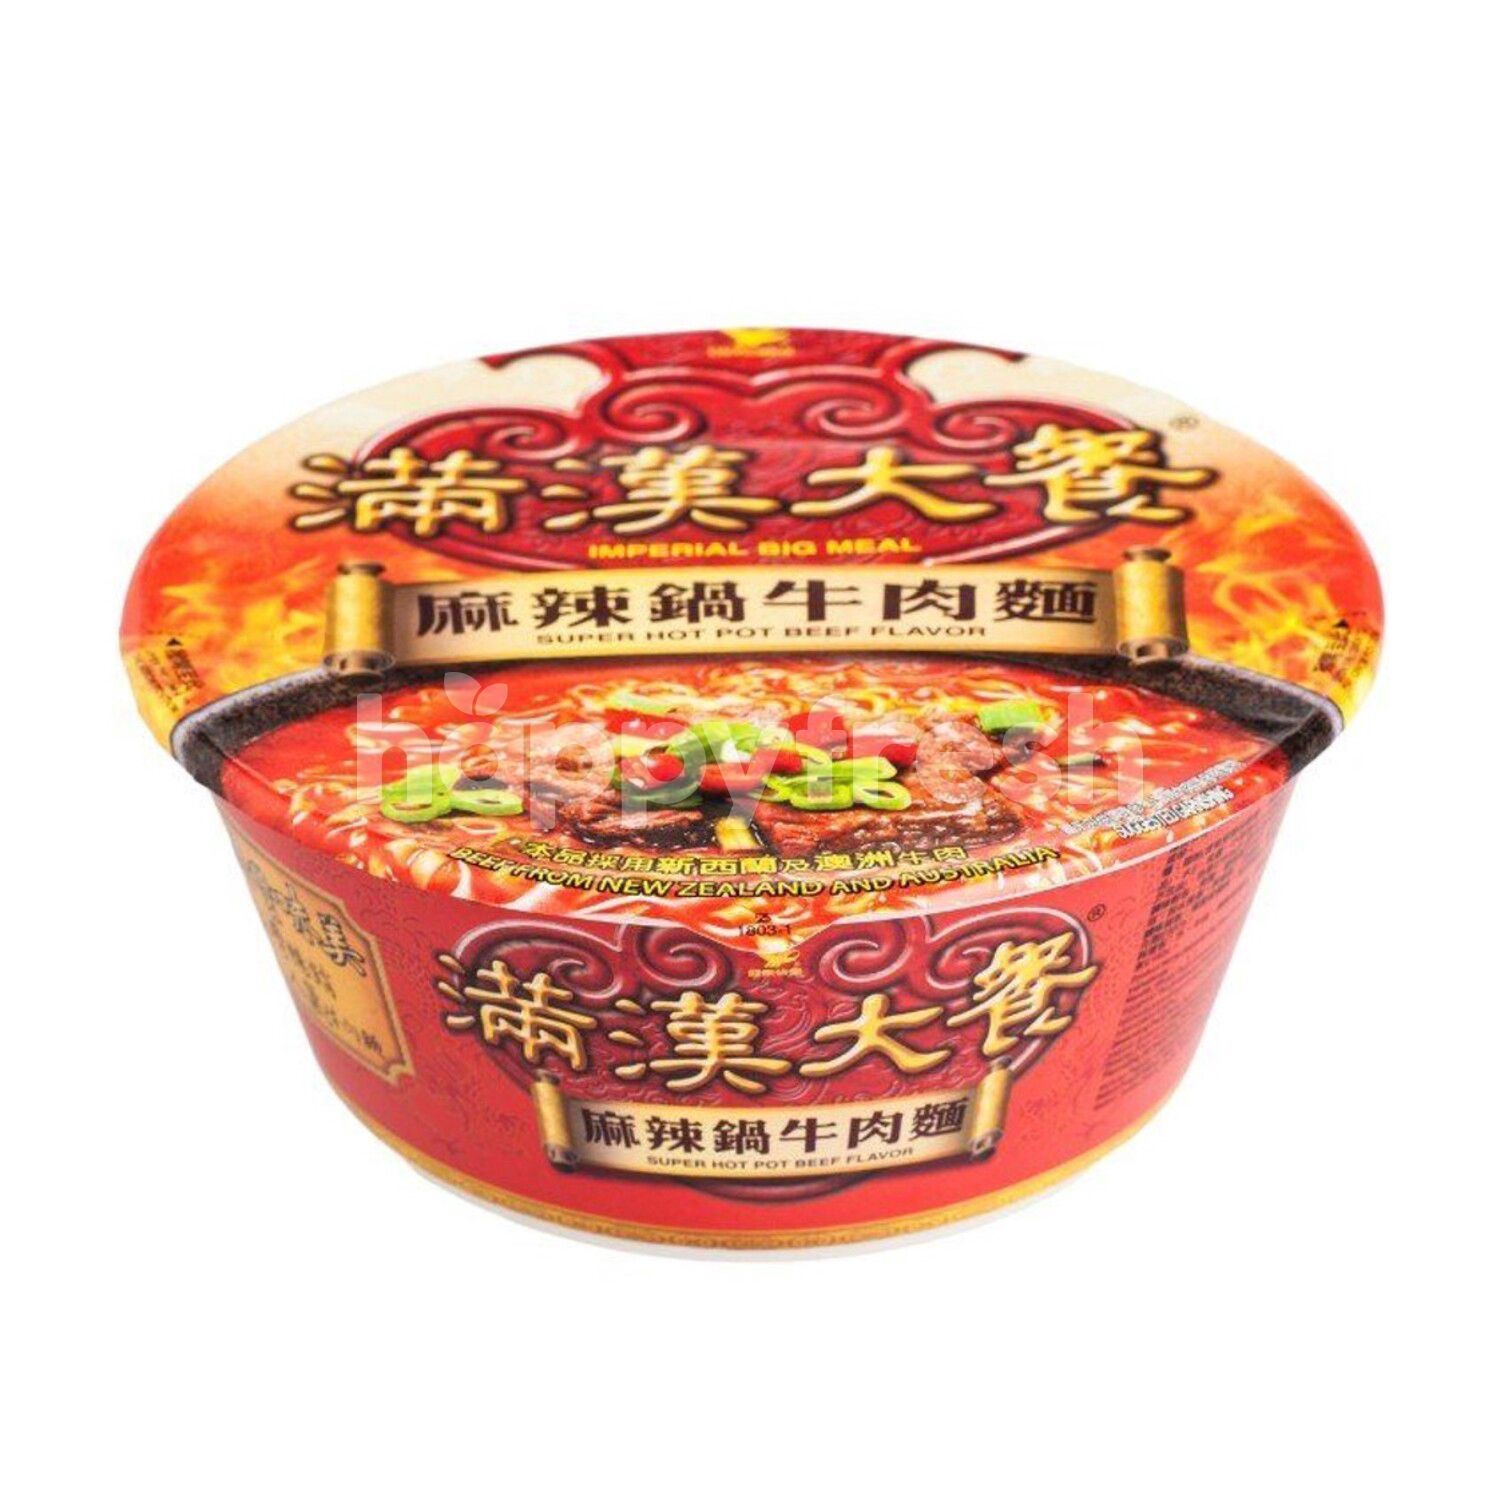 Beli Uni-President Super Hot Pot Beef Bowl Noodles dari AEON - HappyFresh